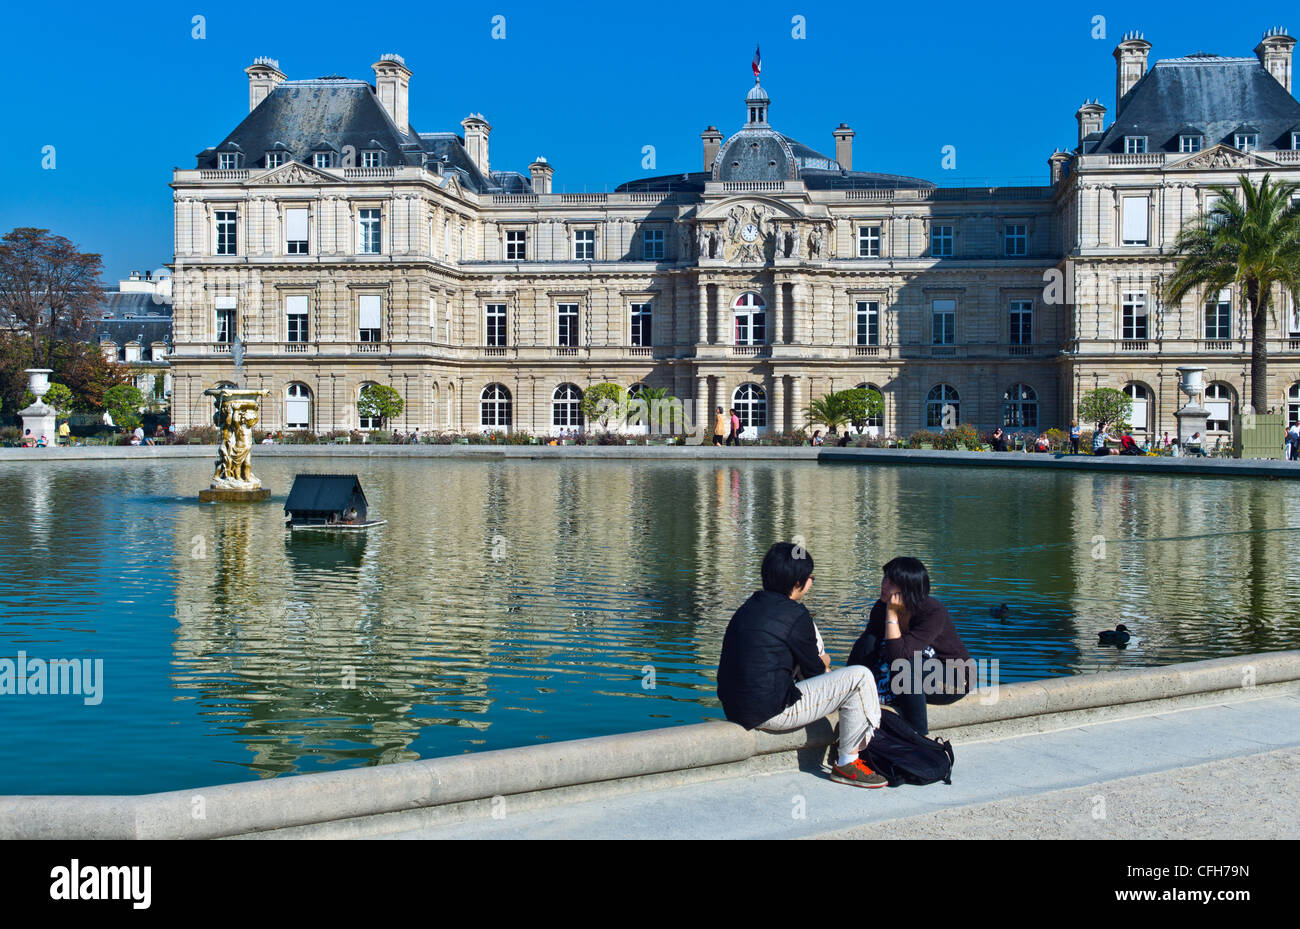 France, Paris, 6th arrondissement, Palais du Luxembourg or Senate Stock Photo